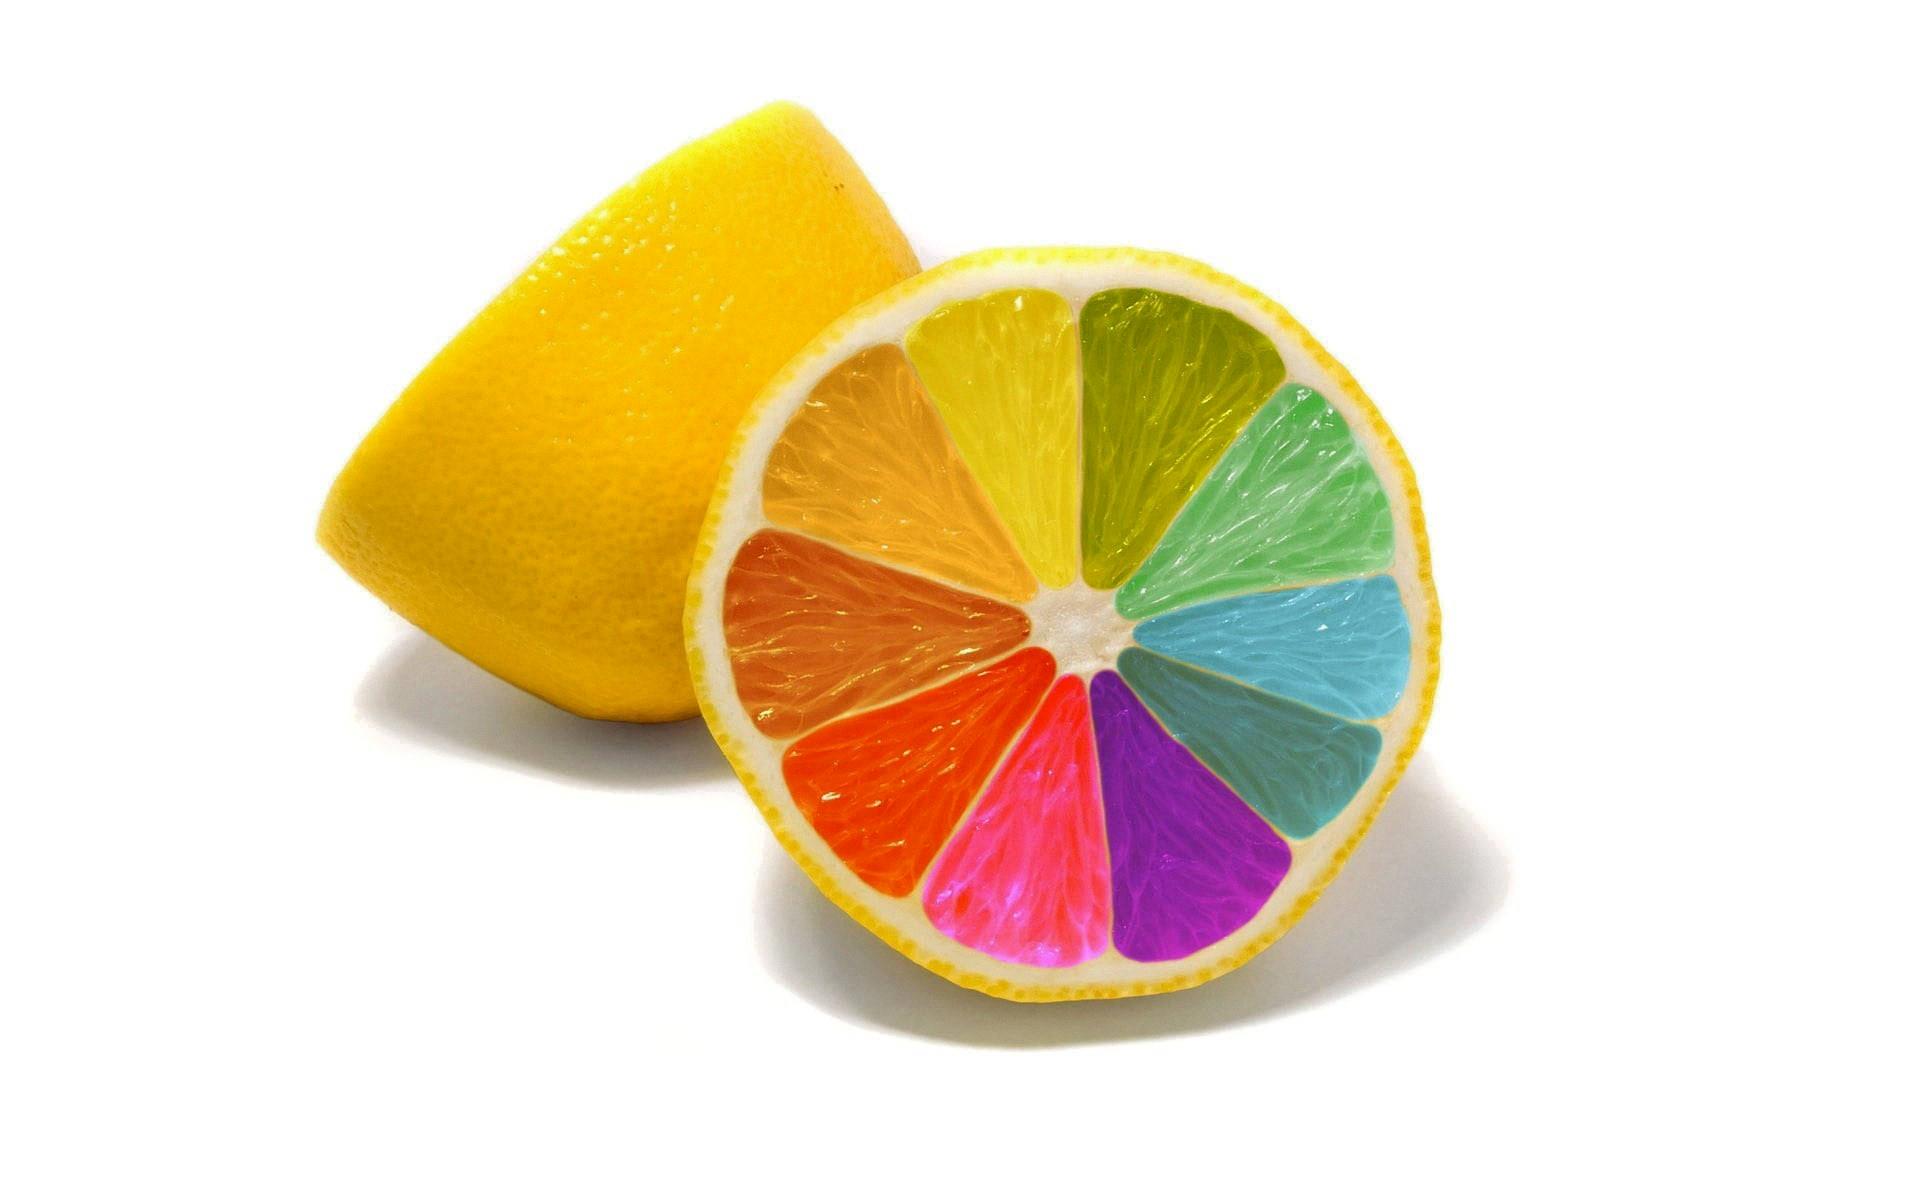 colors of lemons